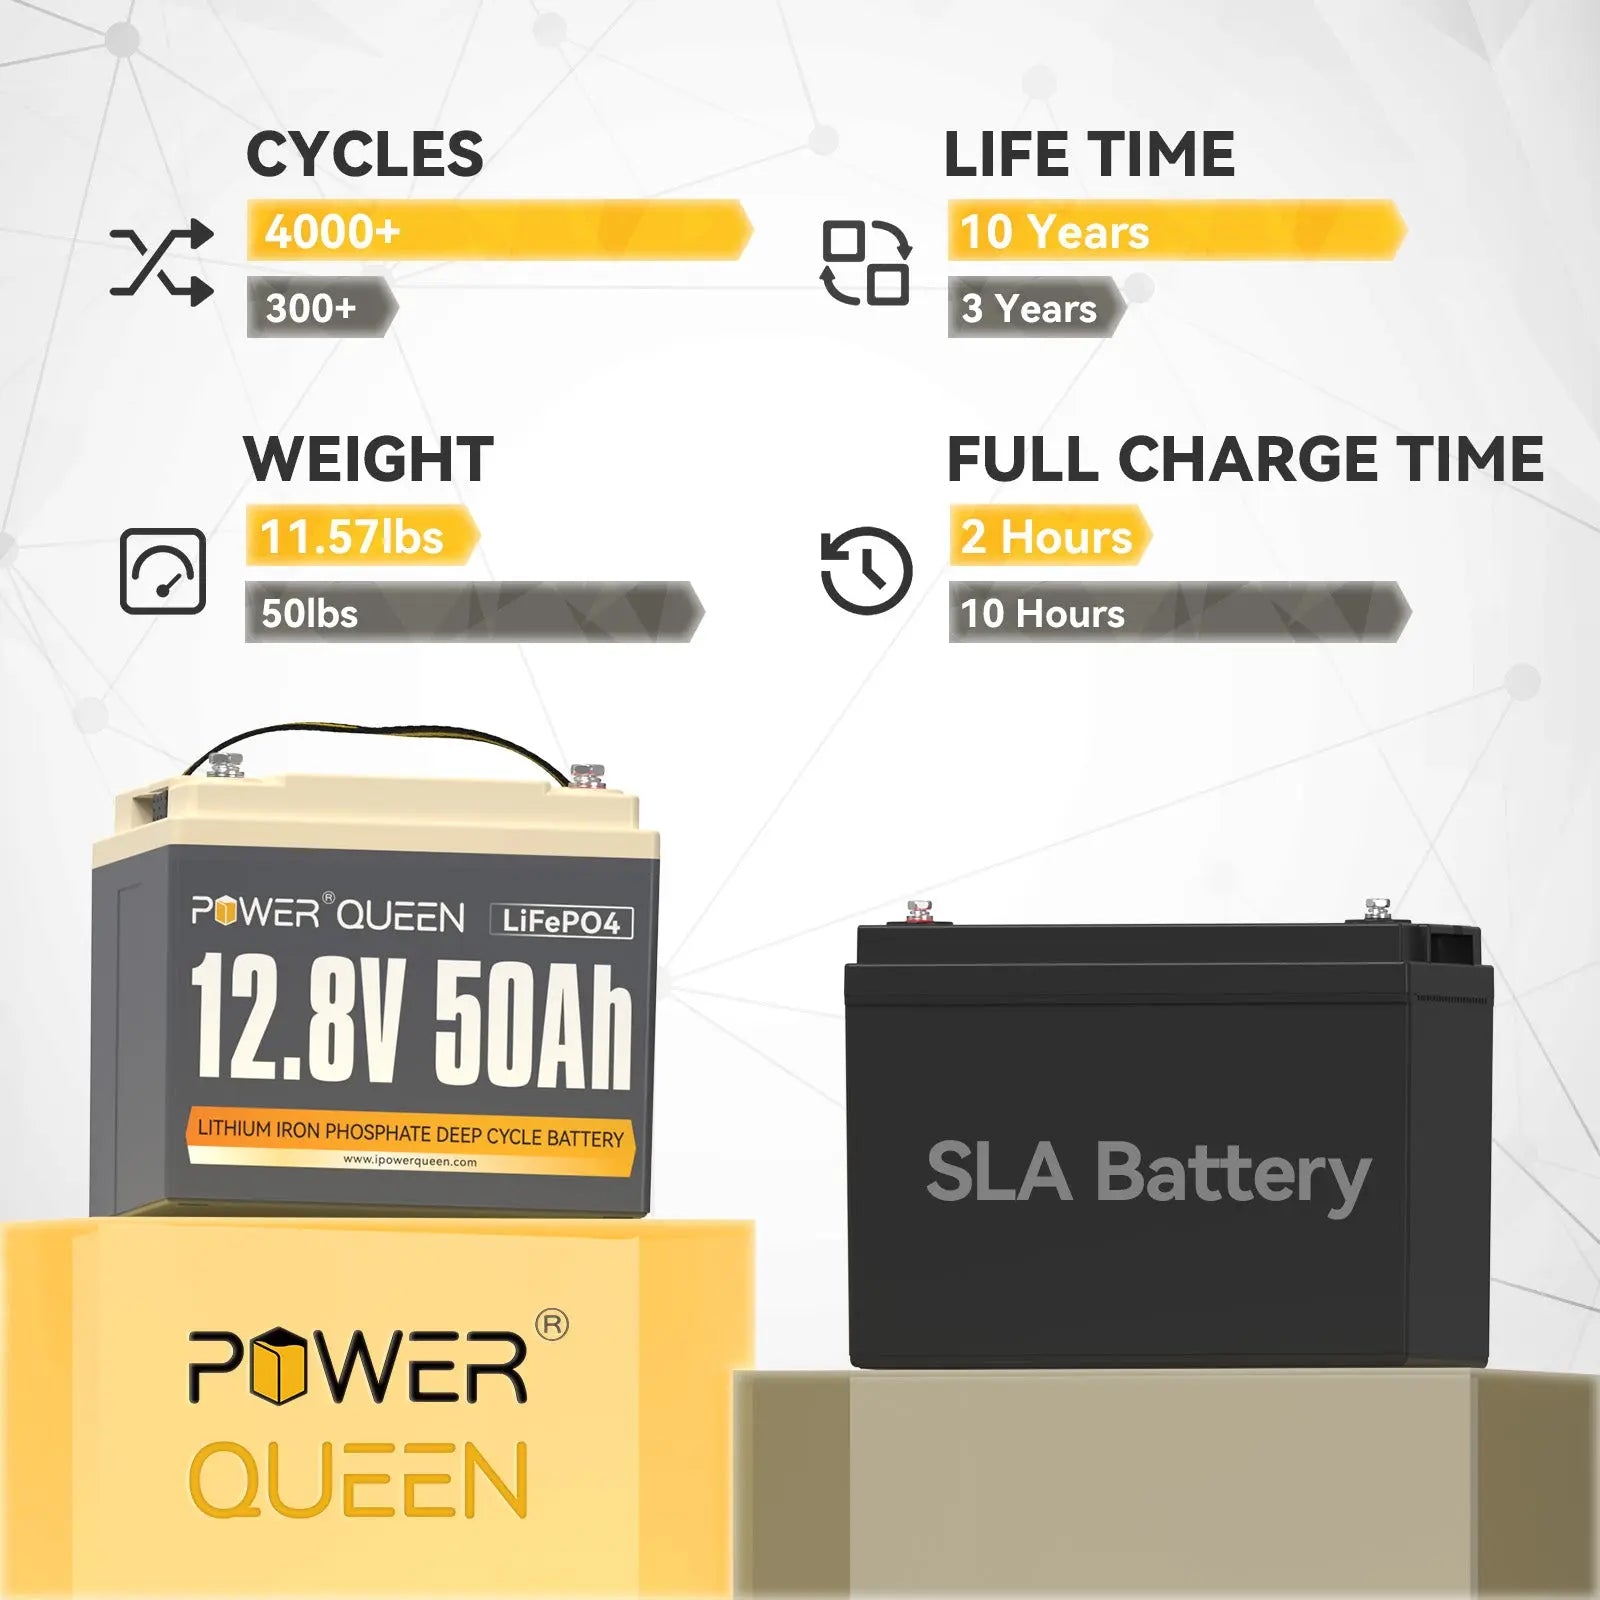 Power Queen 12.8V 50Ah LiFePO4 Battery, Built-in 50A BMS Power Queen